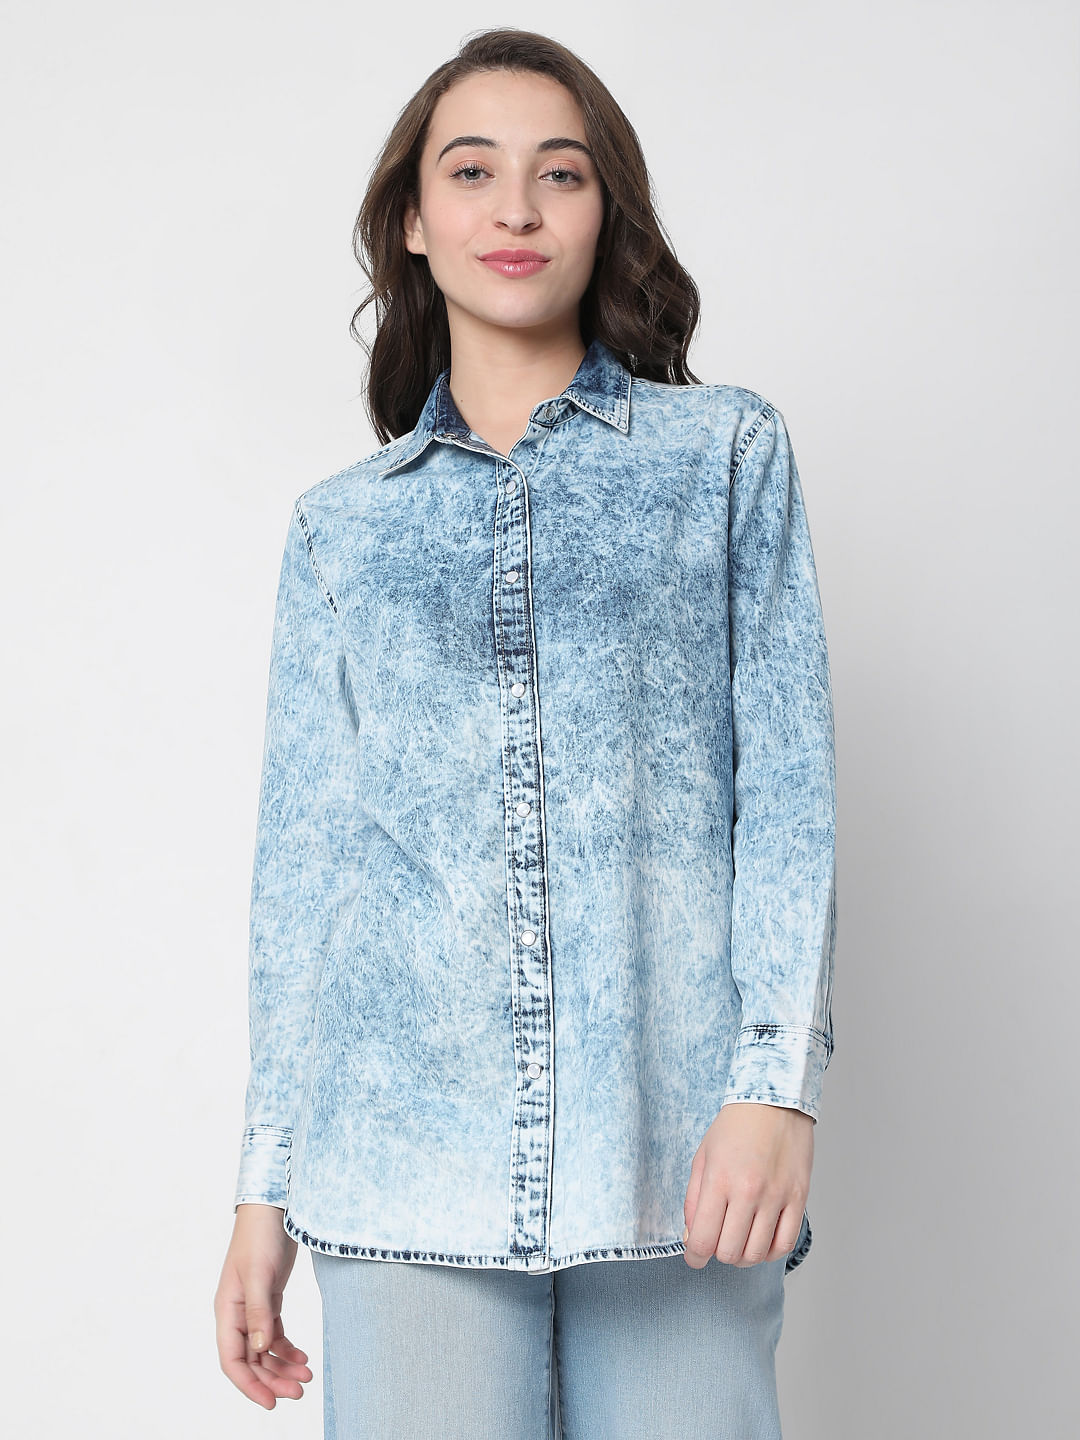 Risen Fray Edge Light Wash Denim Shirt – Blair Blue Bonnet Boutique